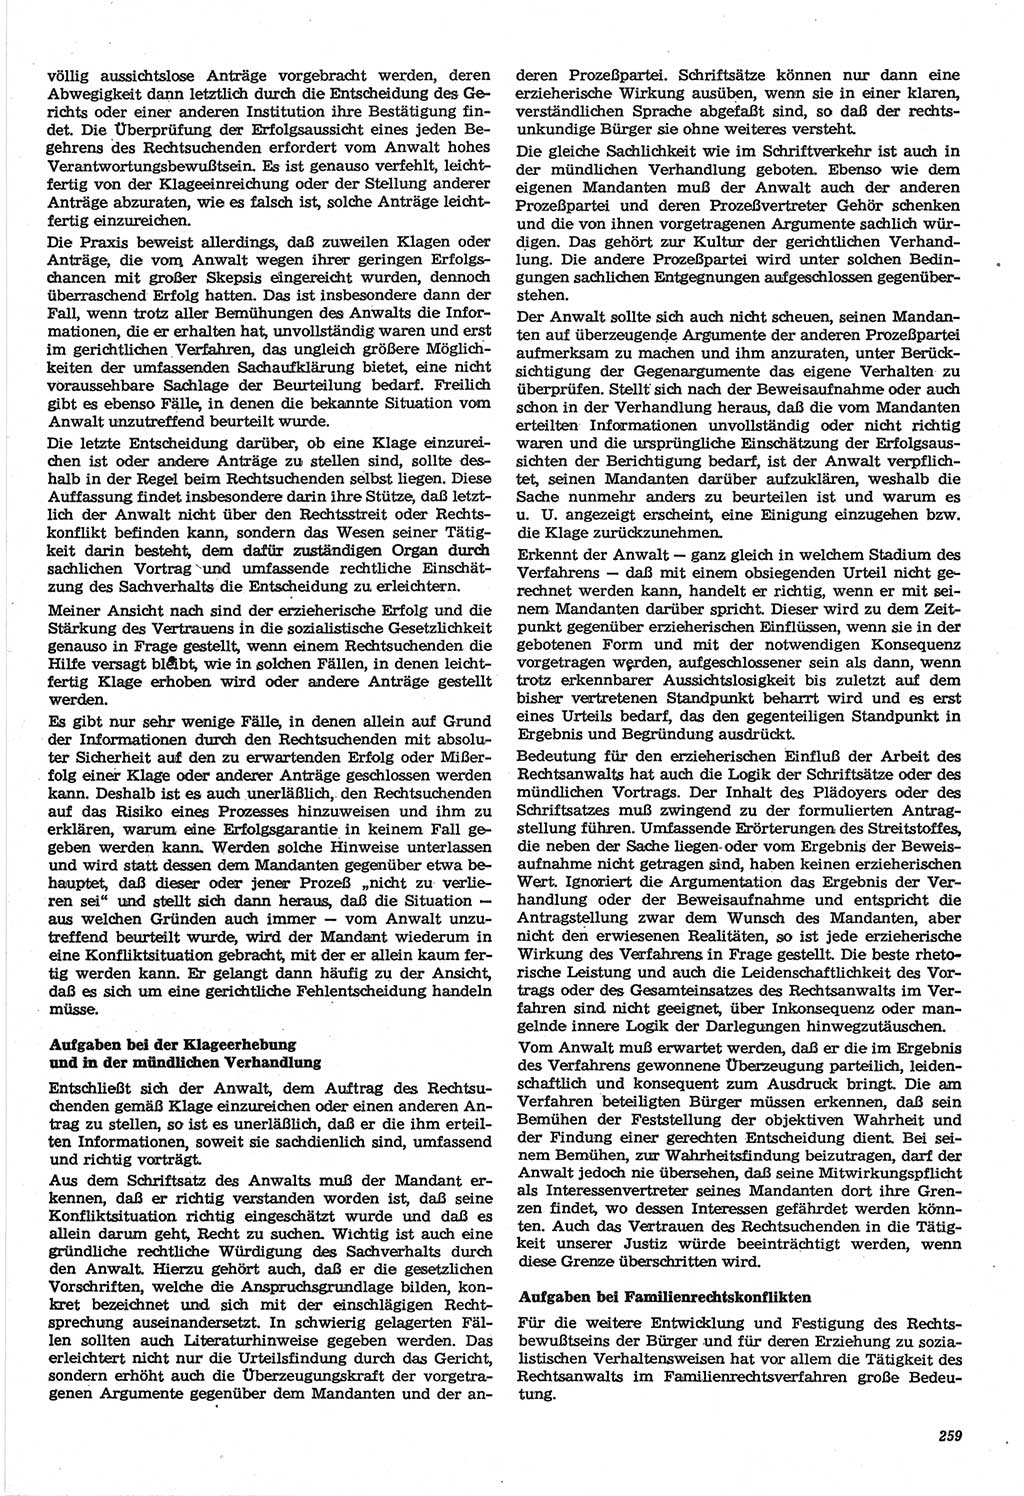 Neue Justiz (NJ), Zeitschrift für Recht und Rechtswissenschaft-Zeitschrift, sozialistisches Recht und Gesetzlichkeit, 31. Jahrgang 1977, Seite 259 (NJ DDR 1977, S. 259)